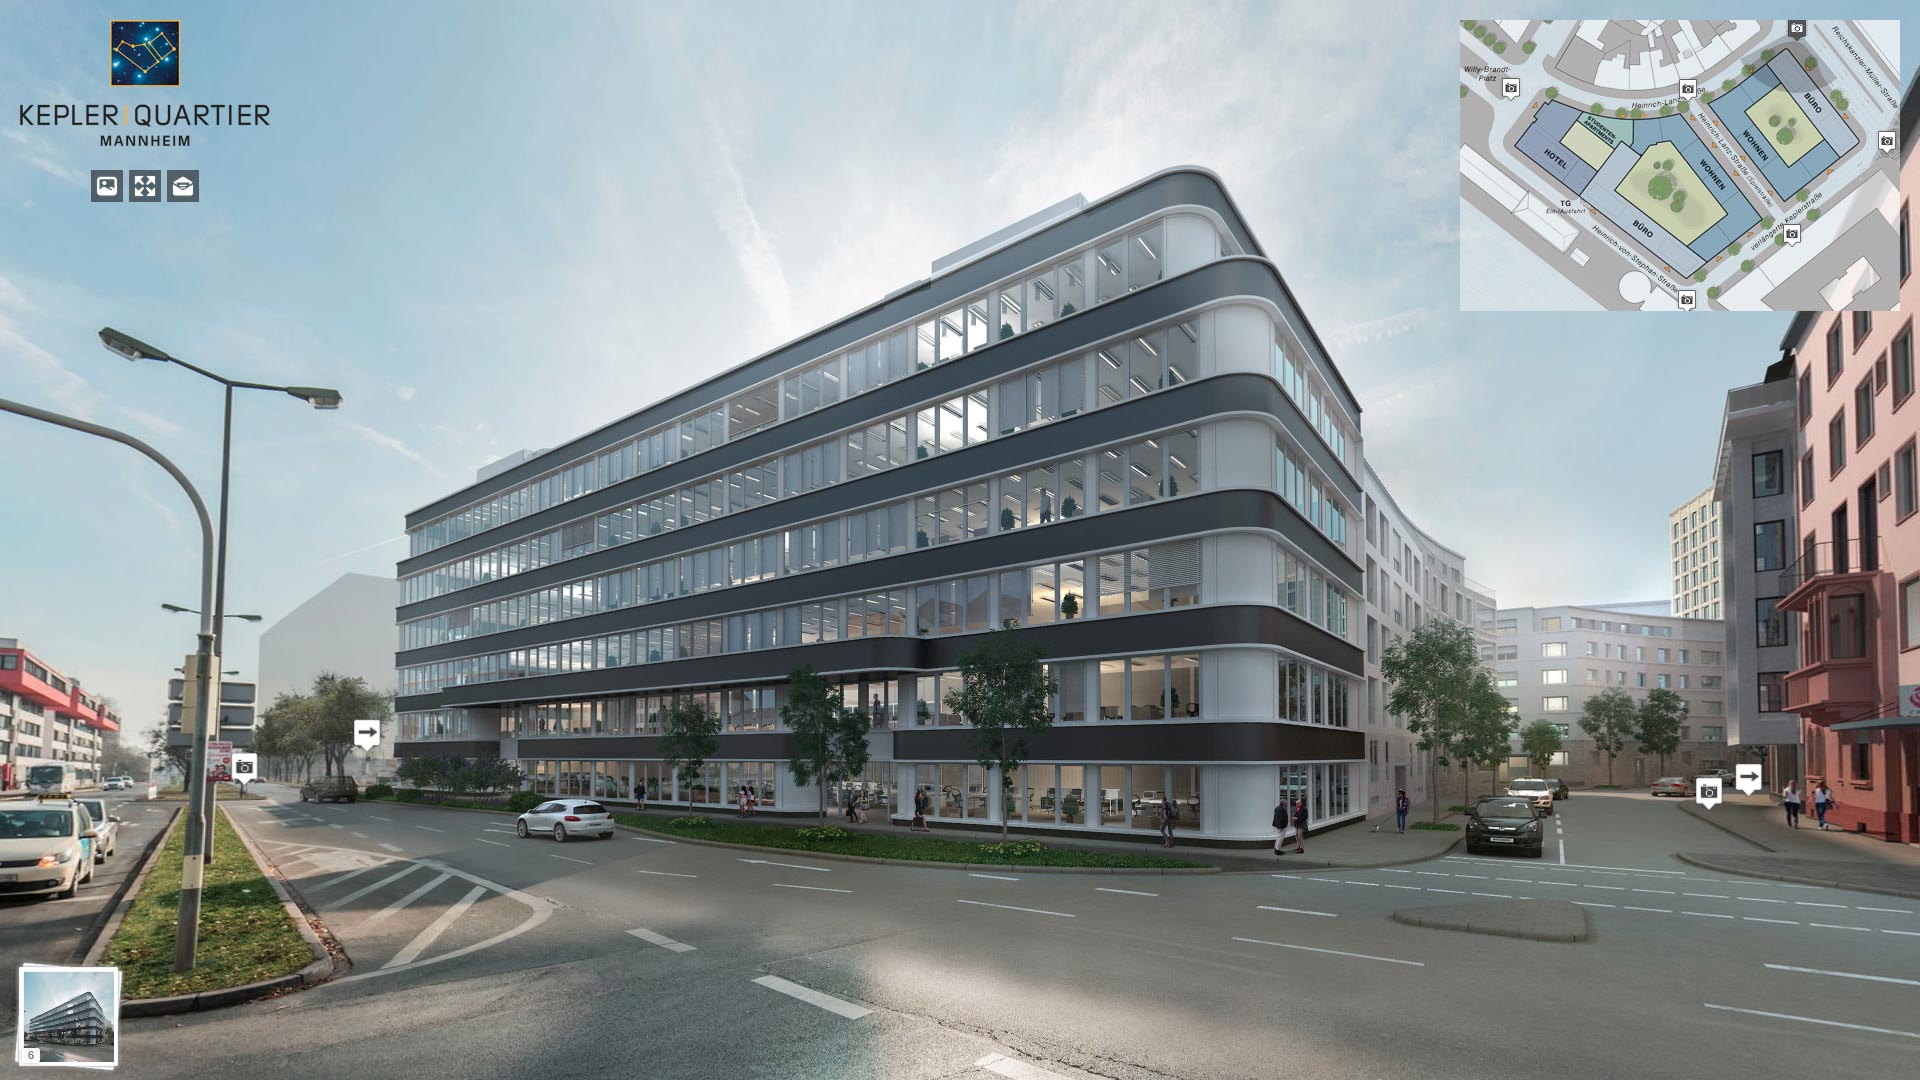 360 Grad Rundgang Kepler Quartier Mannheim, Baustelle Baudokumentation, Bautellendokumentation